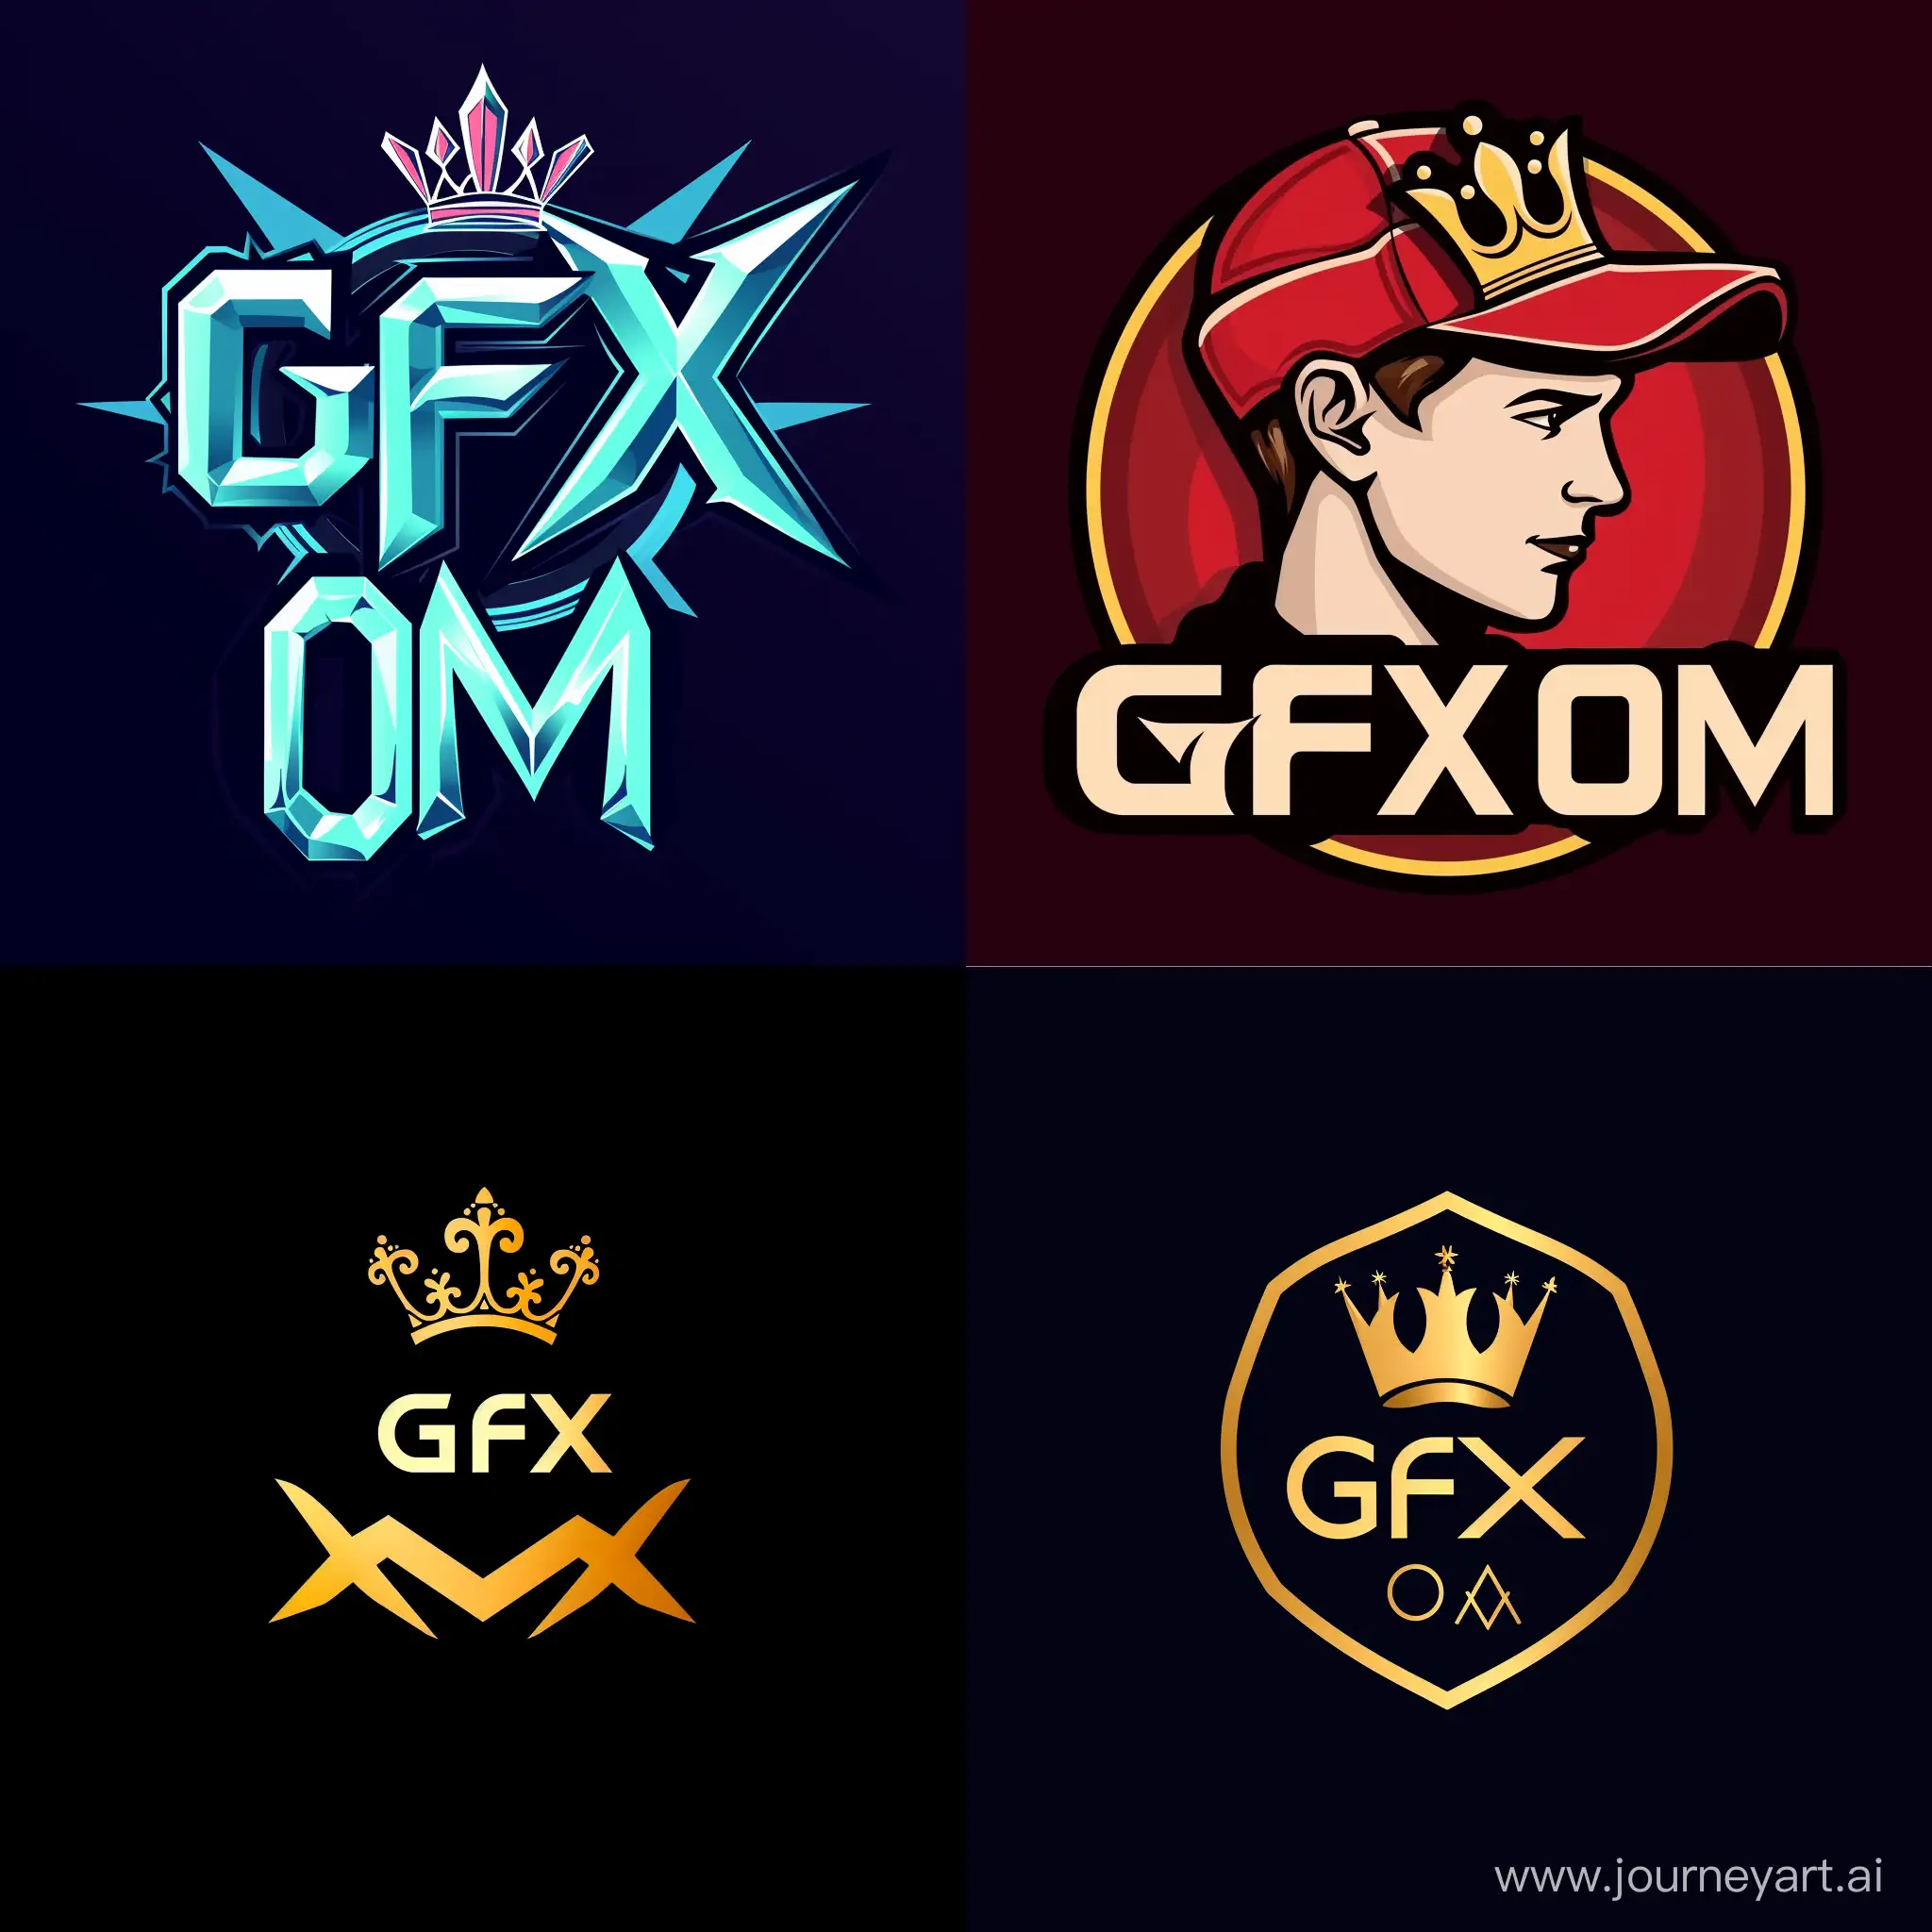 Gfx-OM-Logo-Elegant-Angle-Boy-with-Crown